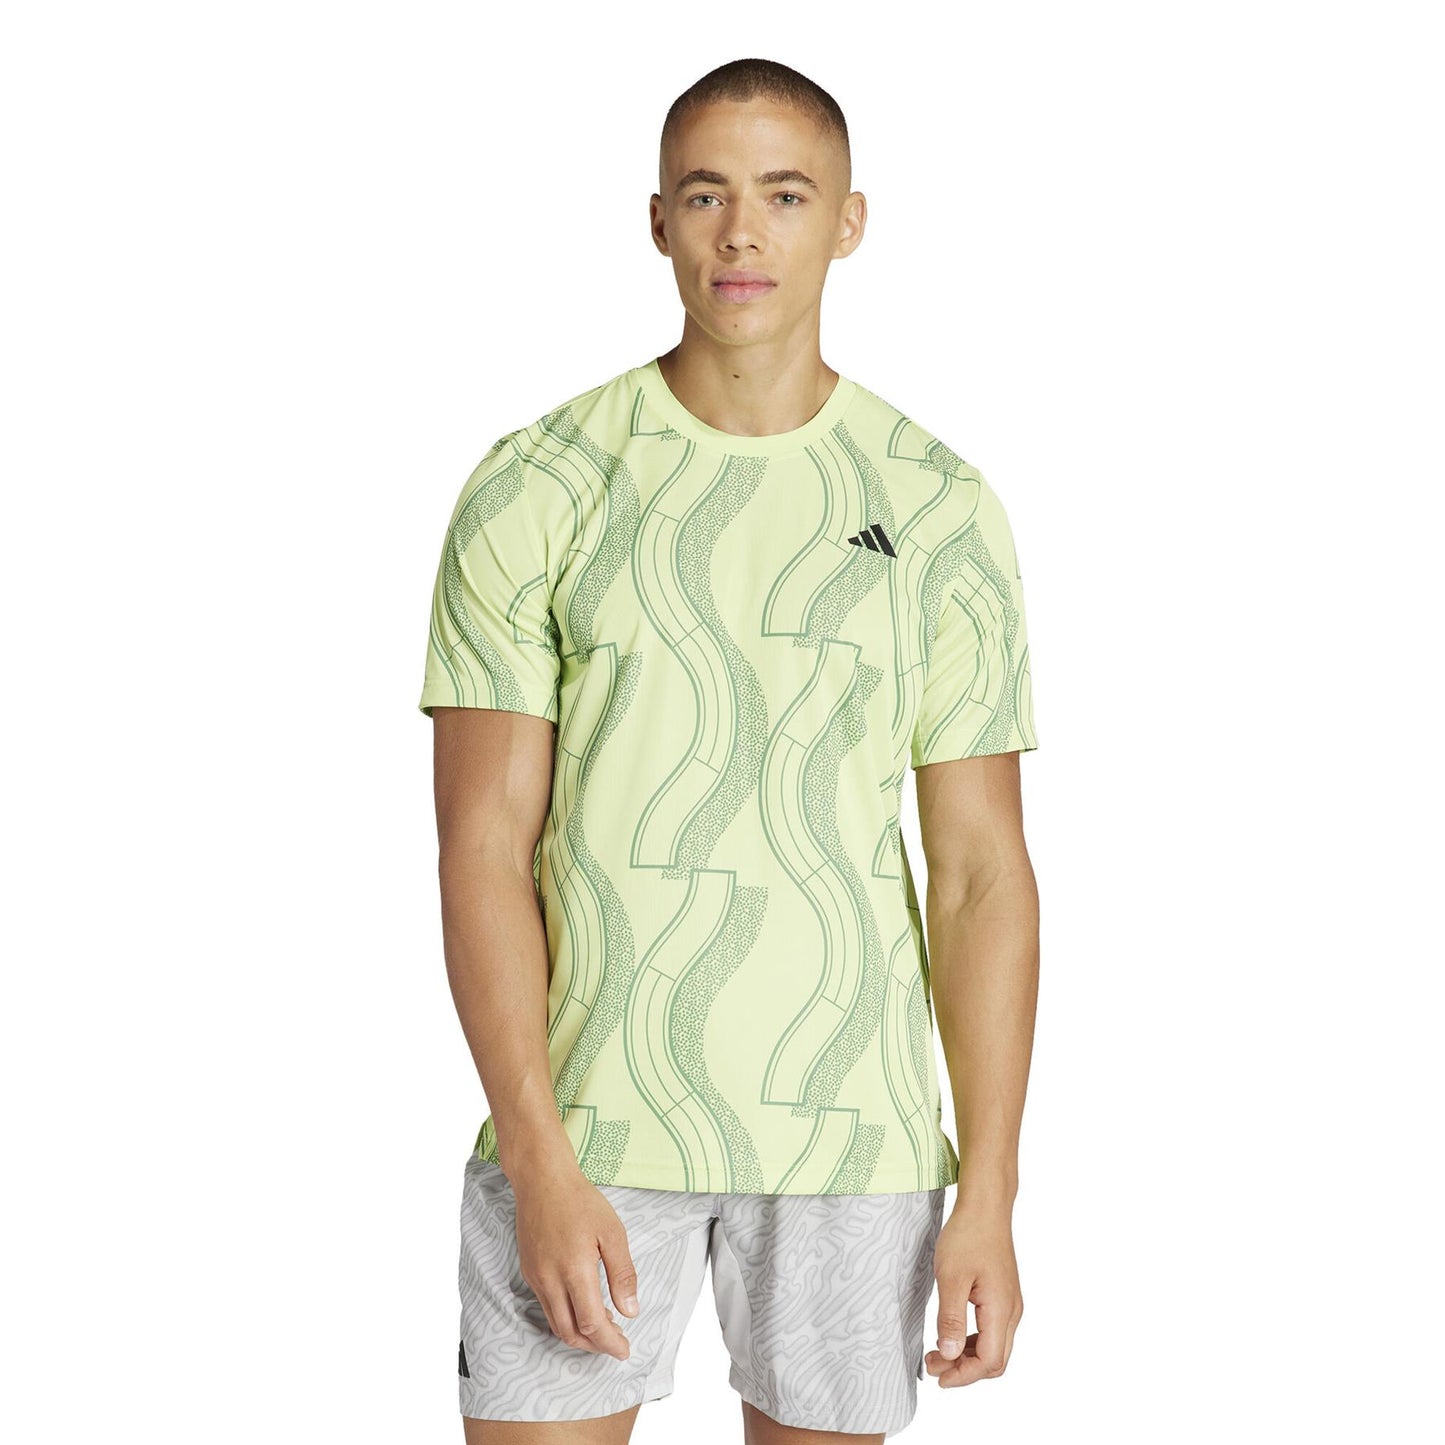 ADIDAS Mens Club Graphic Badminton T-Shirt - Green